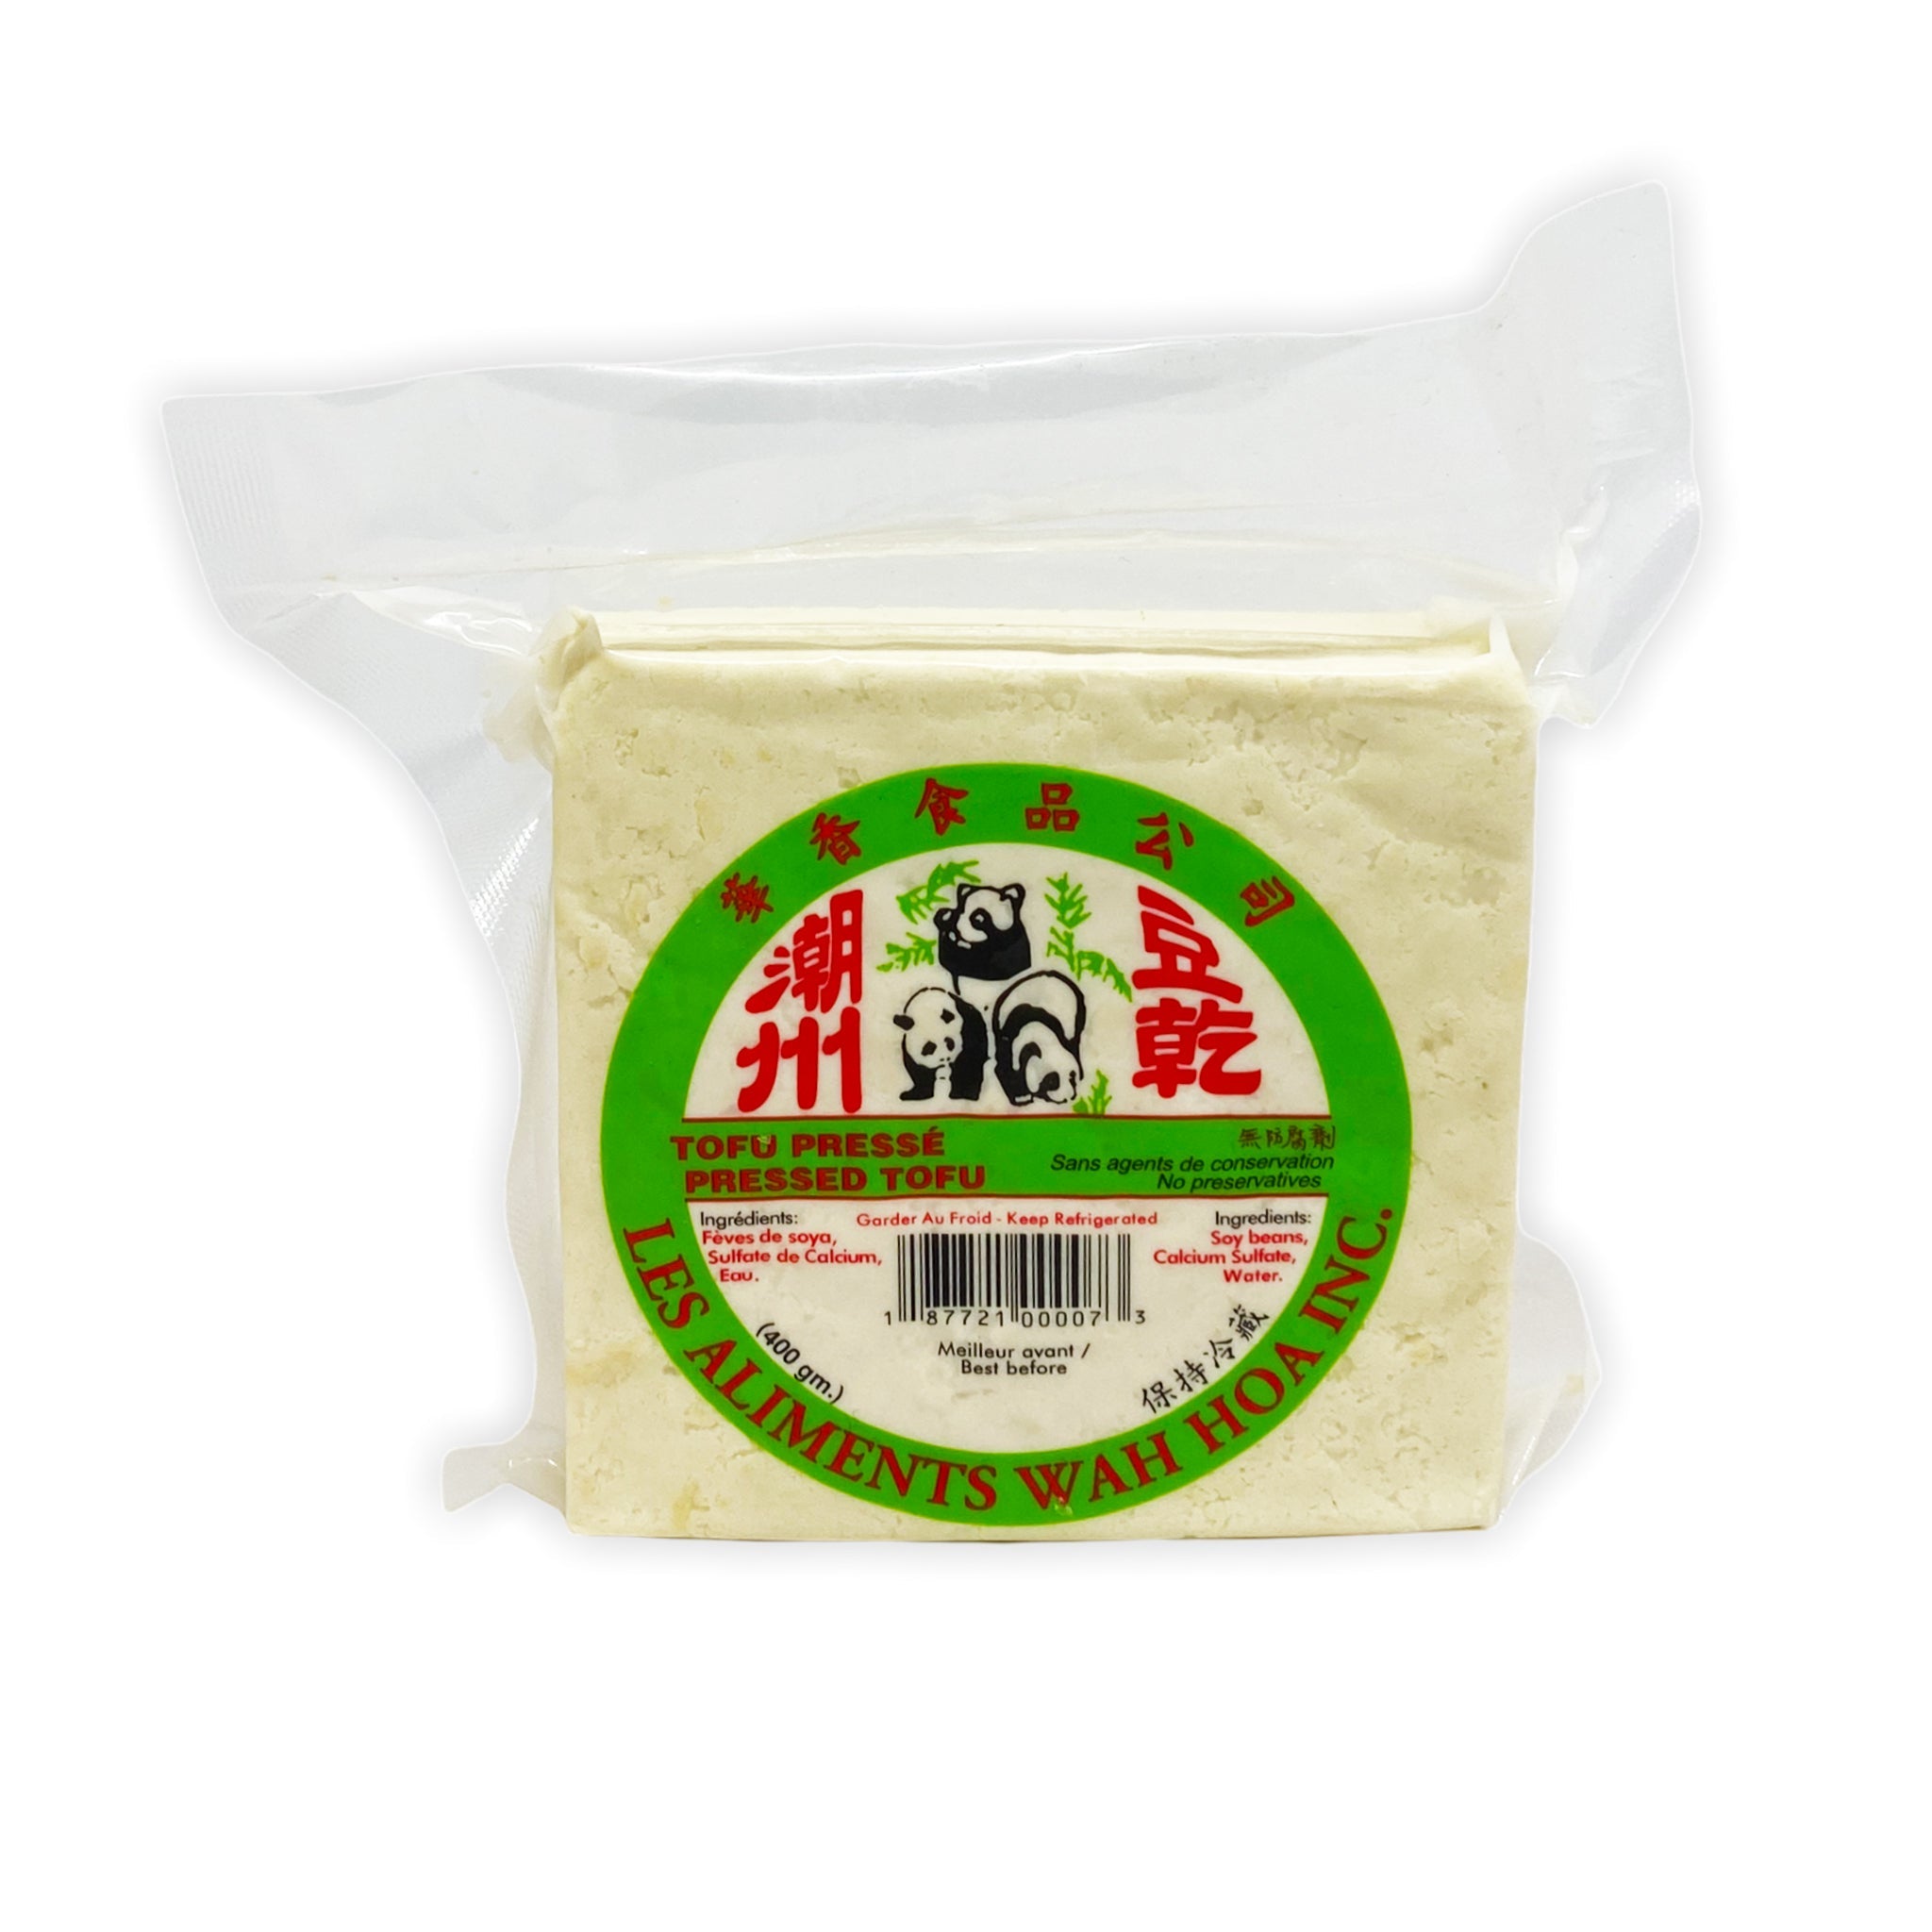 Pressed tofu – SUE FOODS